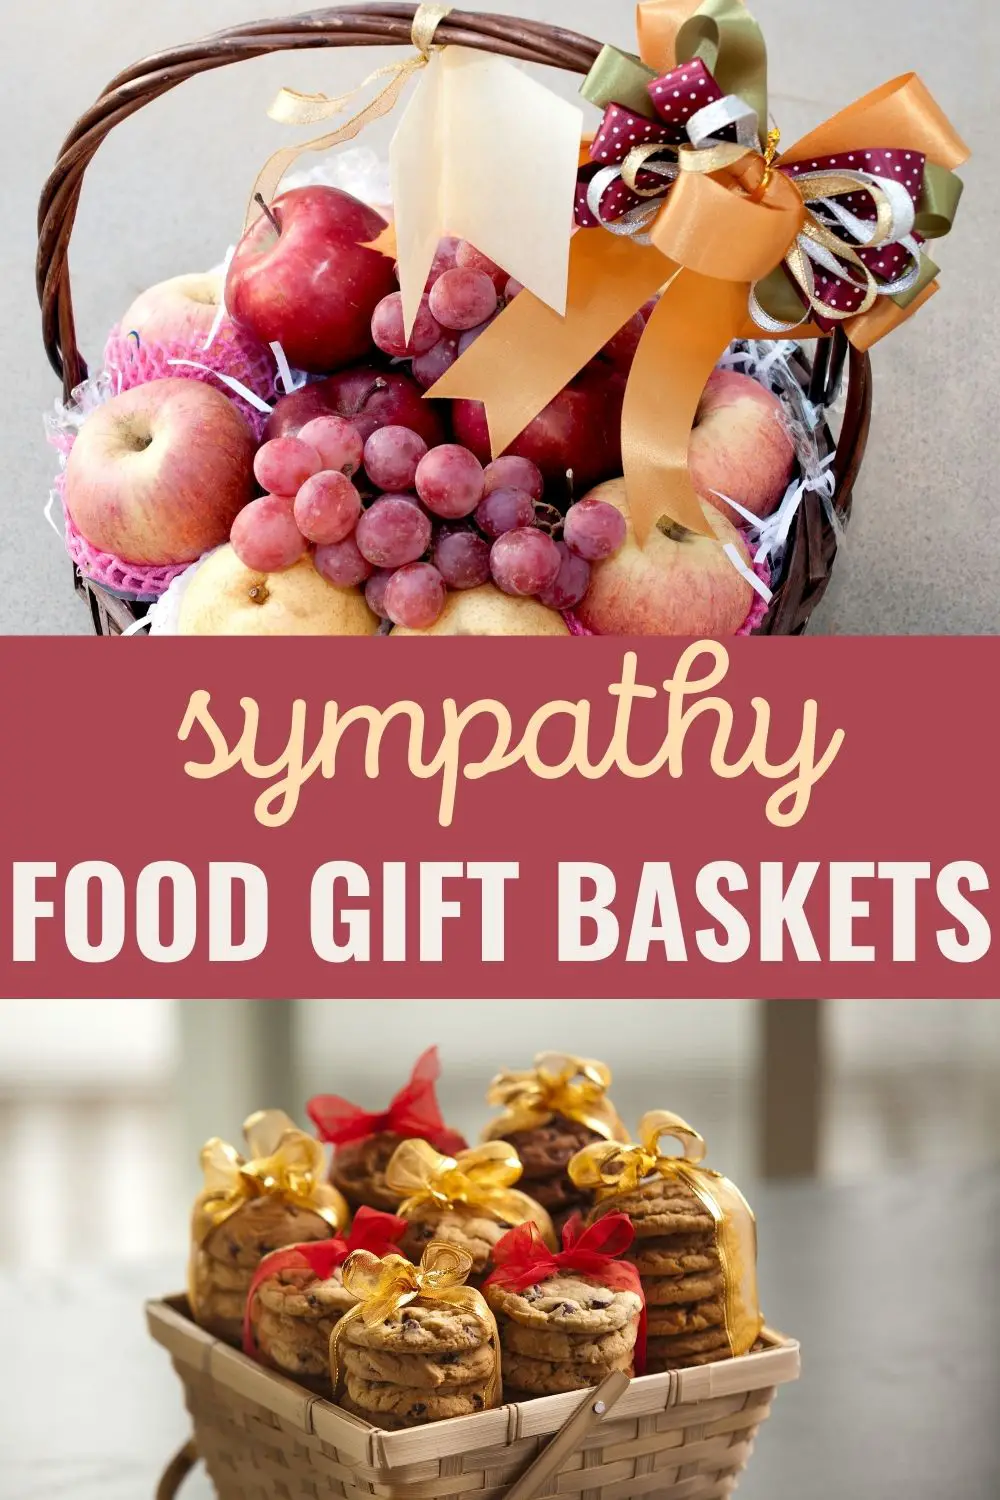 Sympathy food gift baskets